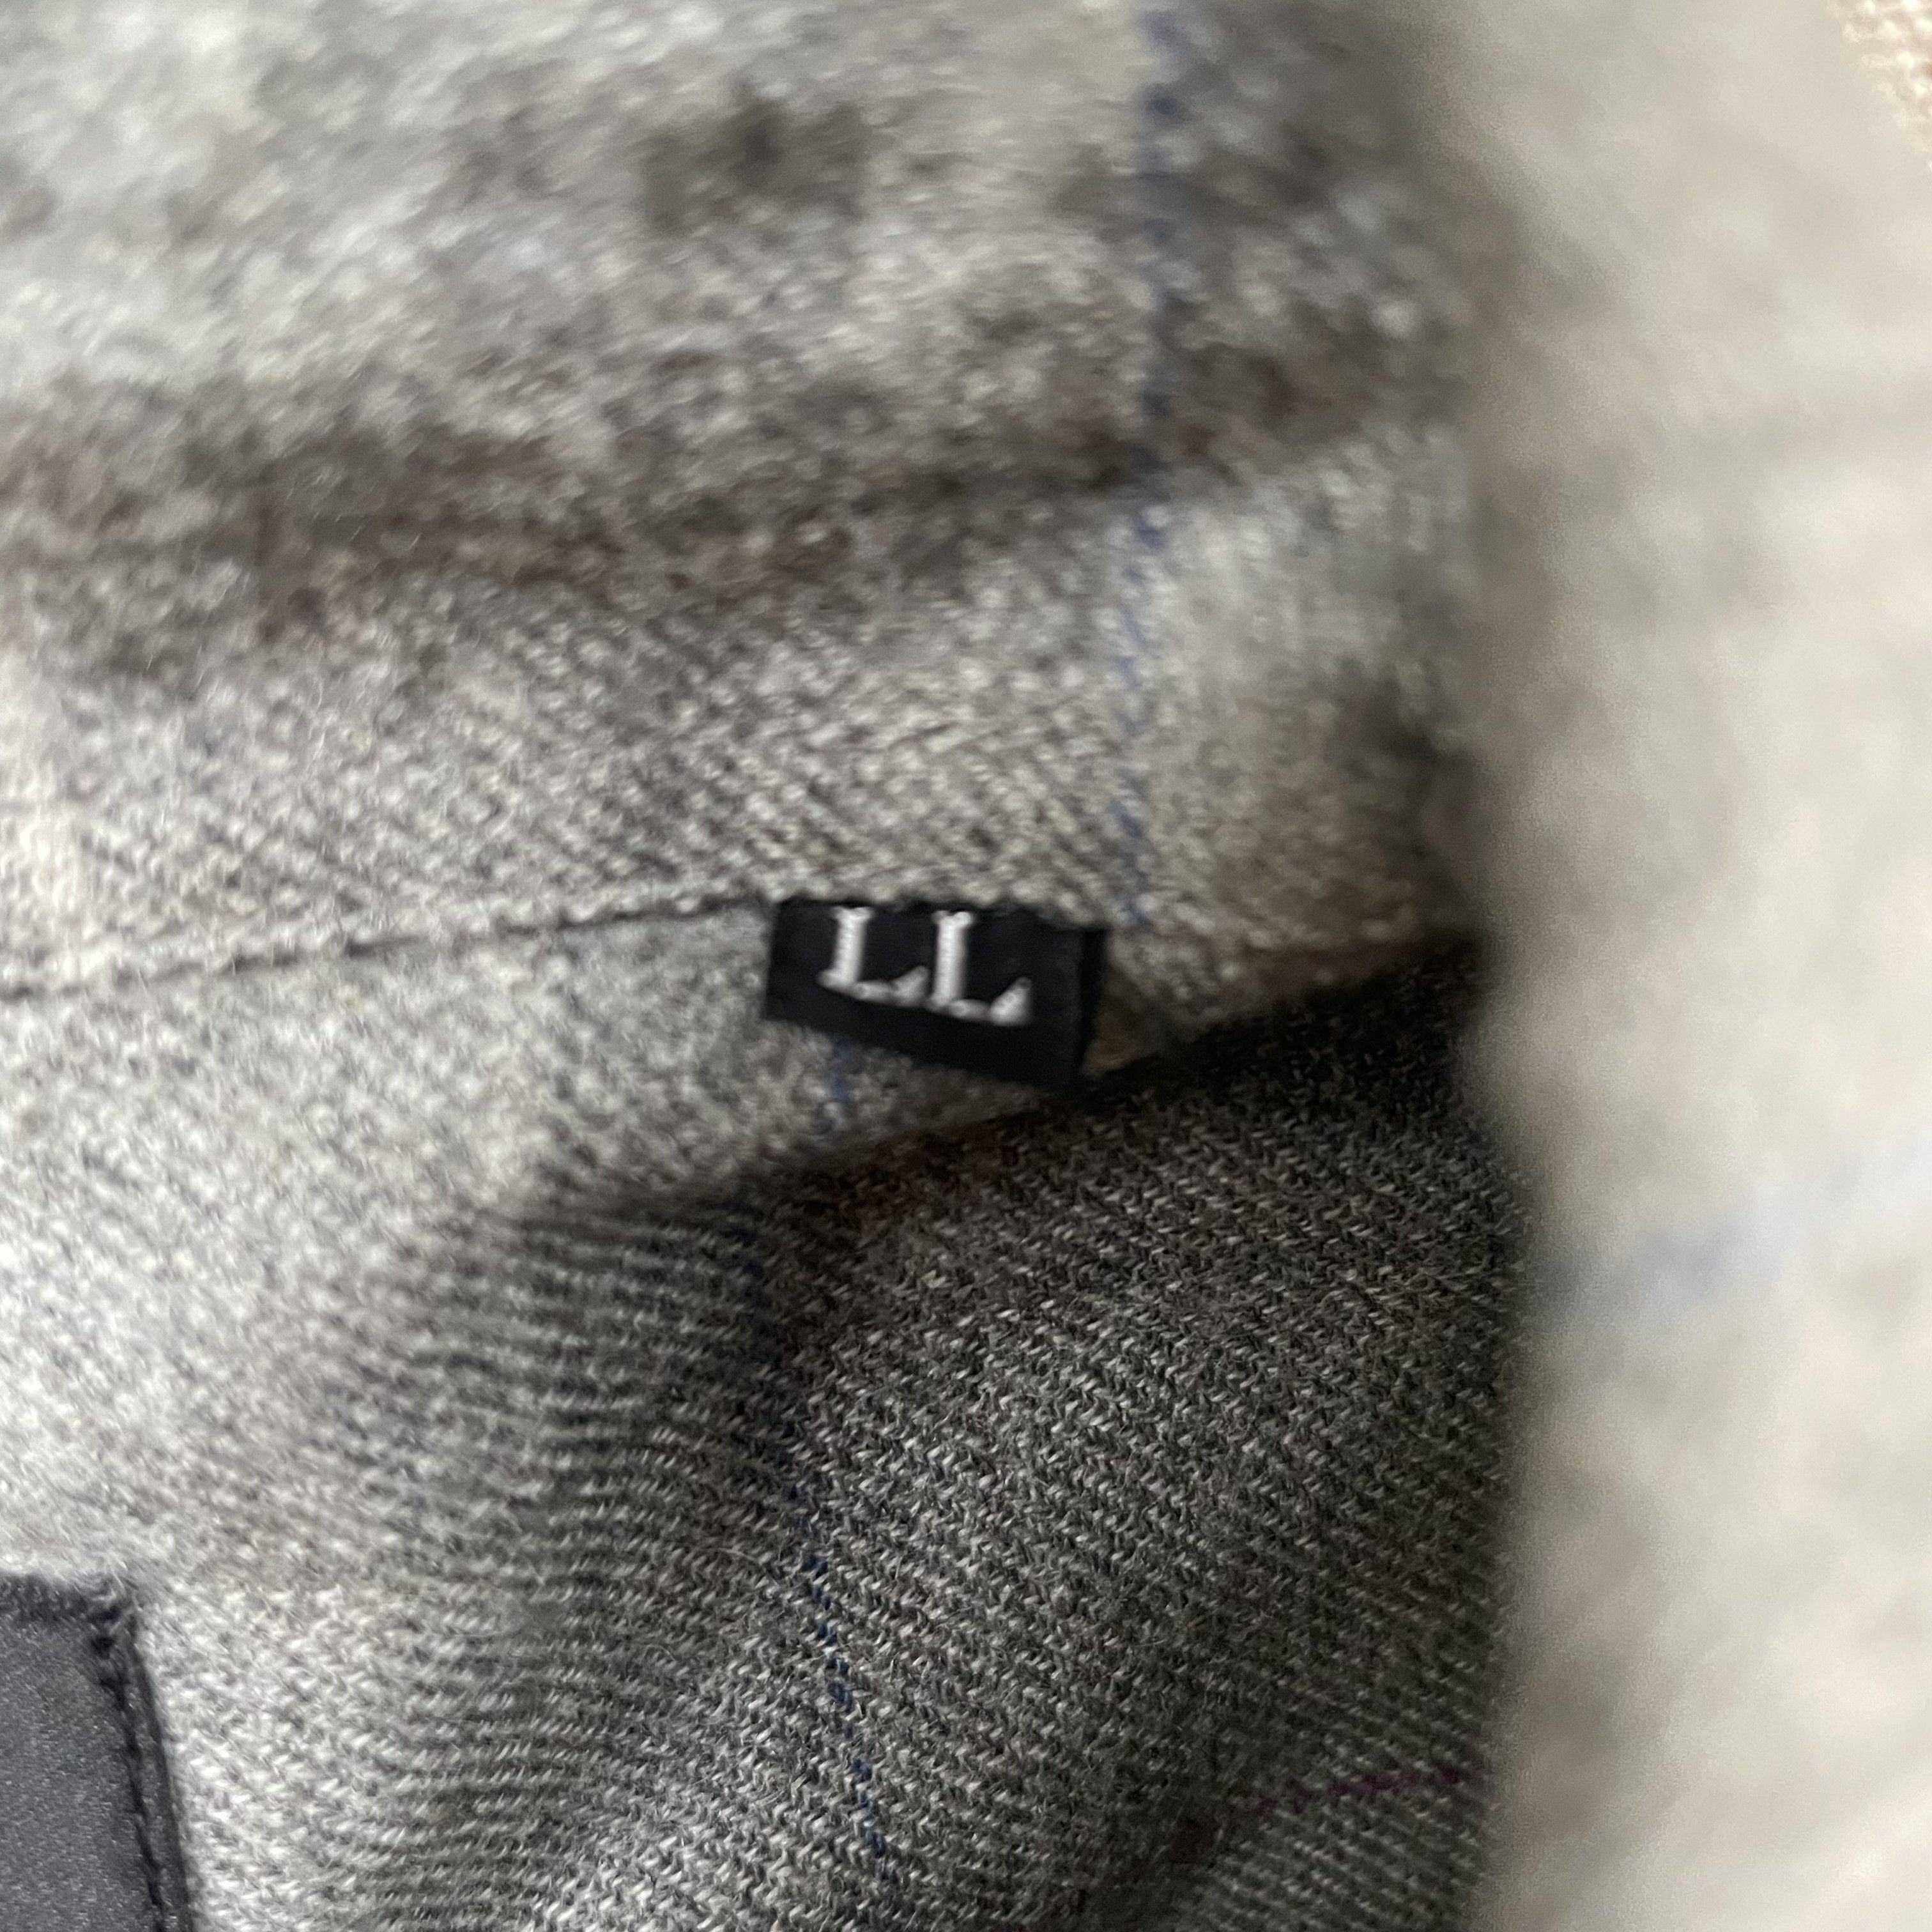 Kansai Yamamoto - Minimalist Check Shirt, Wool, (JP LL) - 4